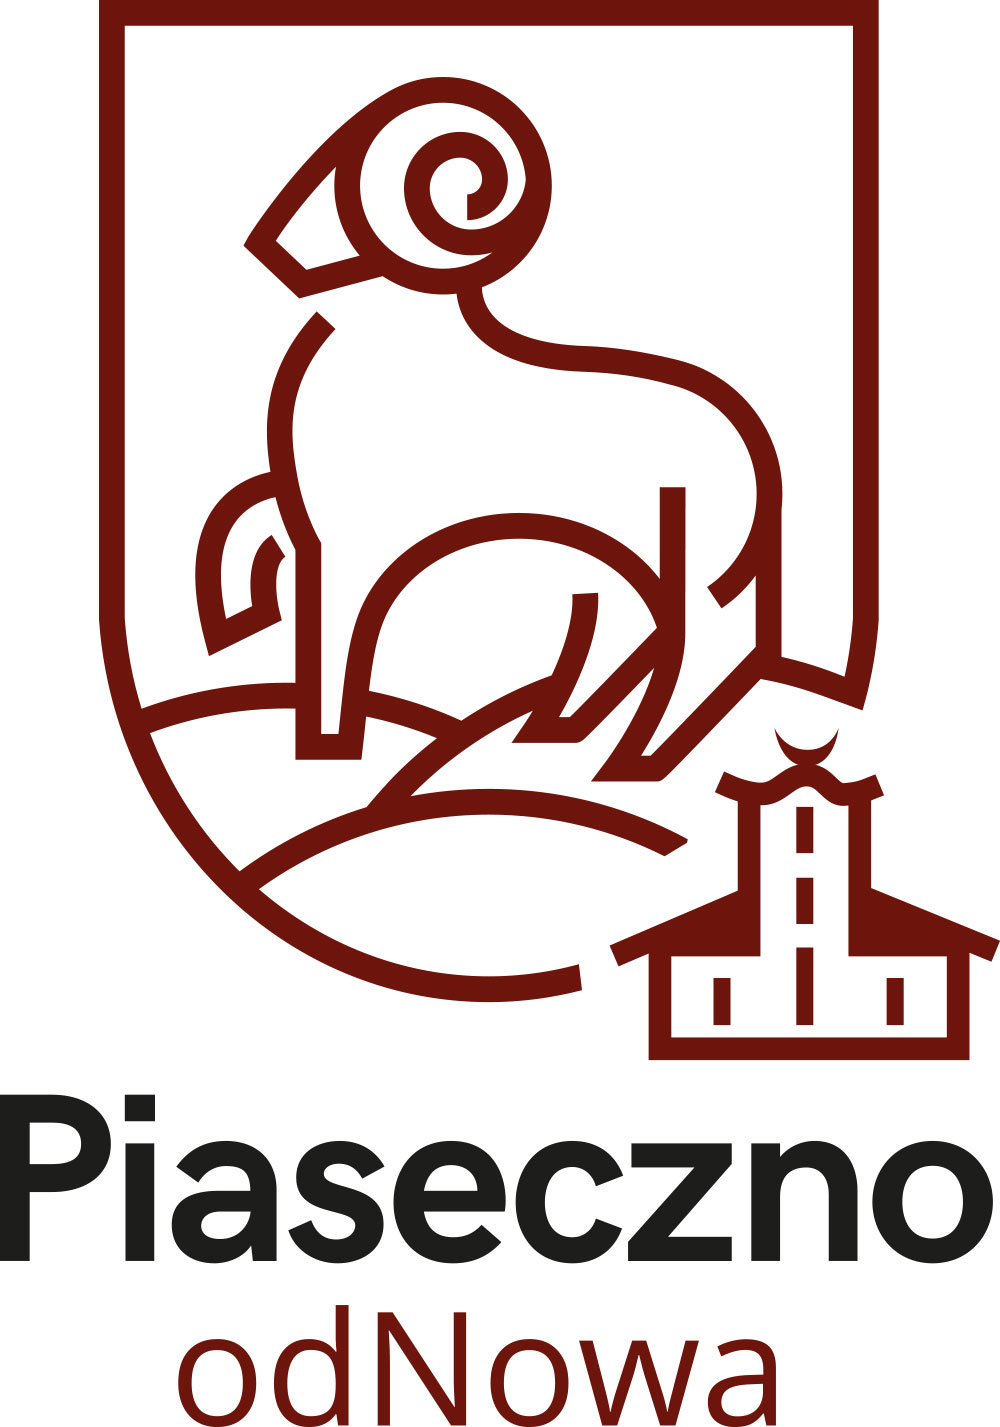 Piaseczno odNowa logo